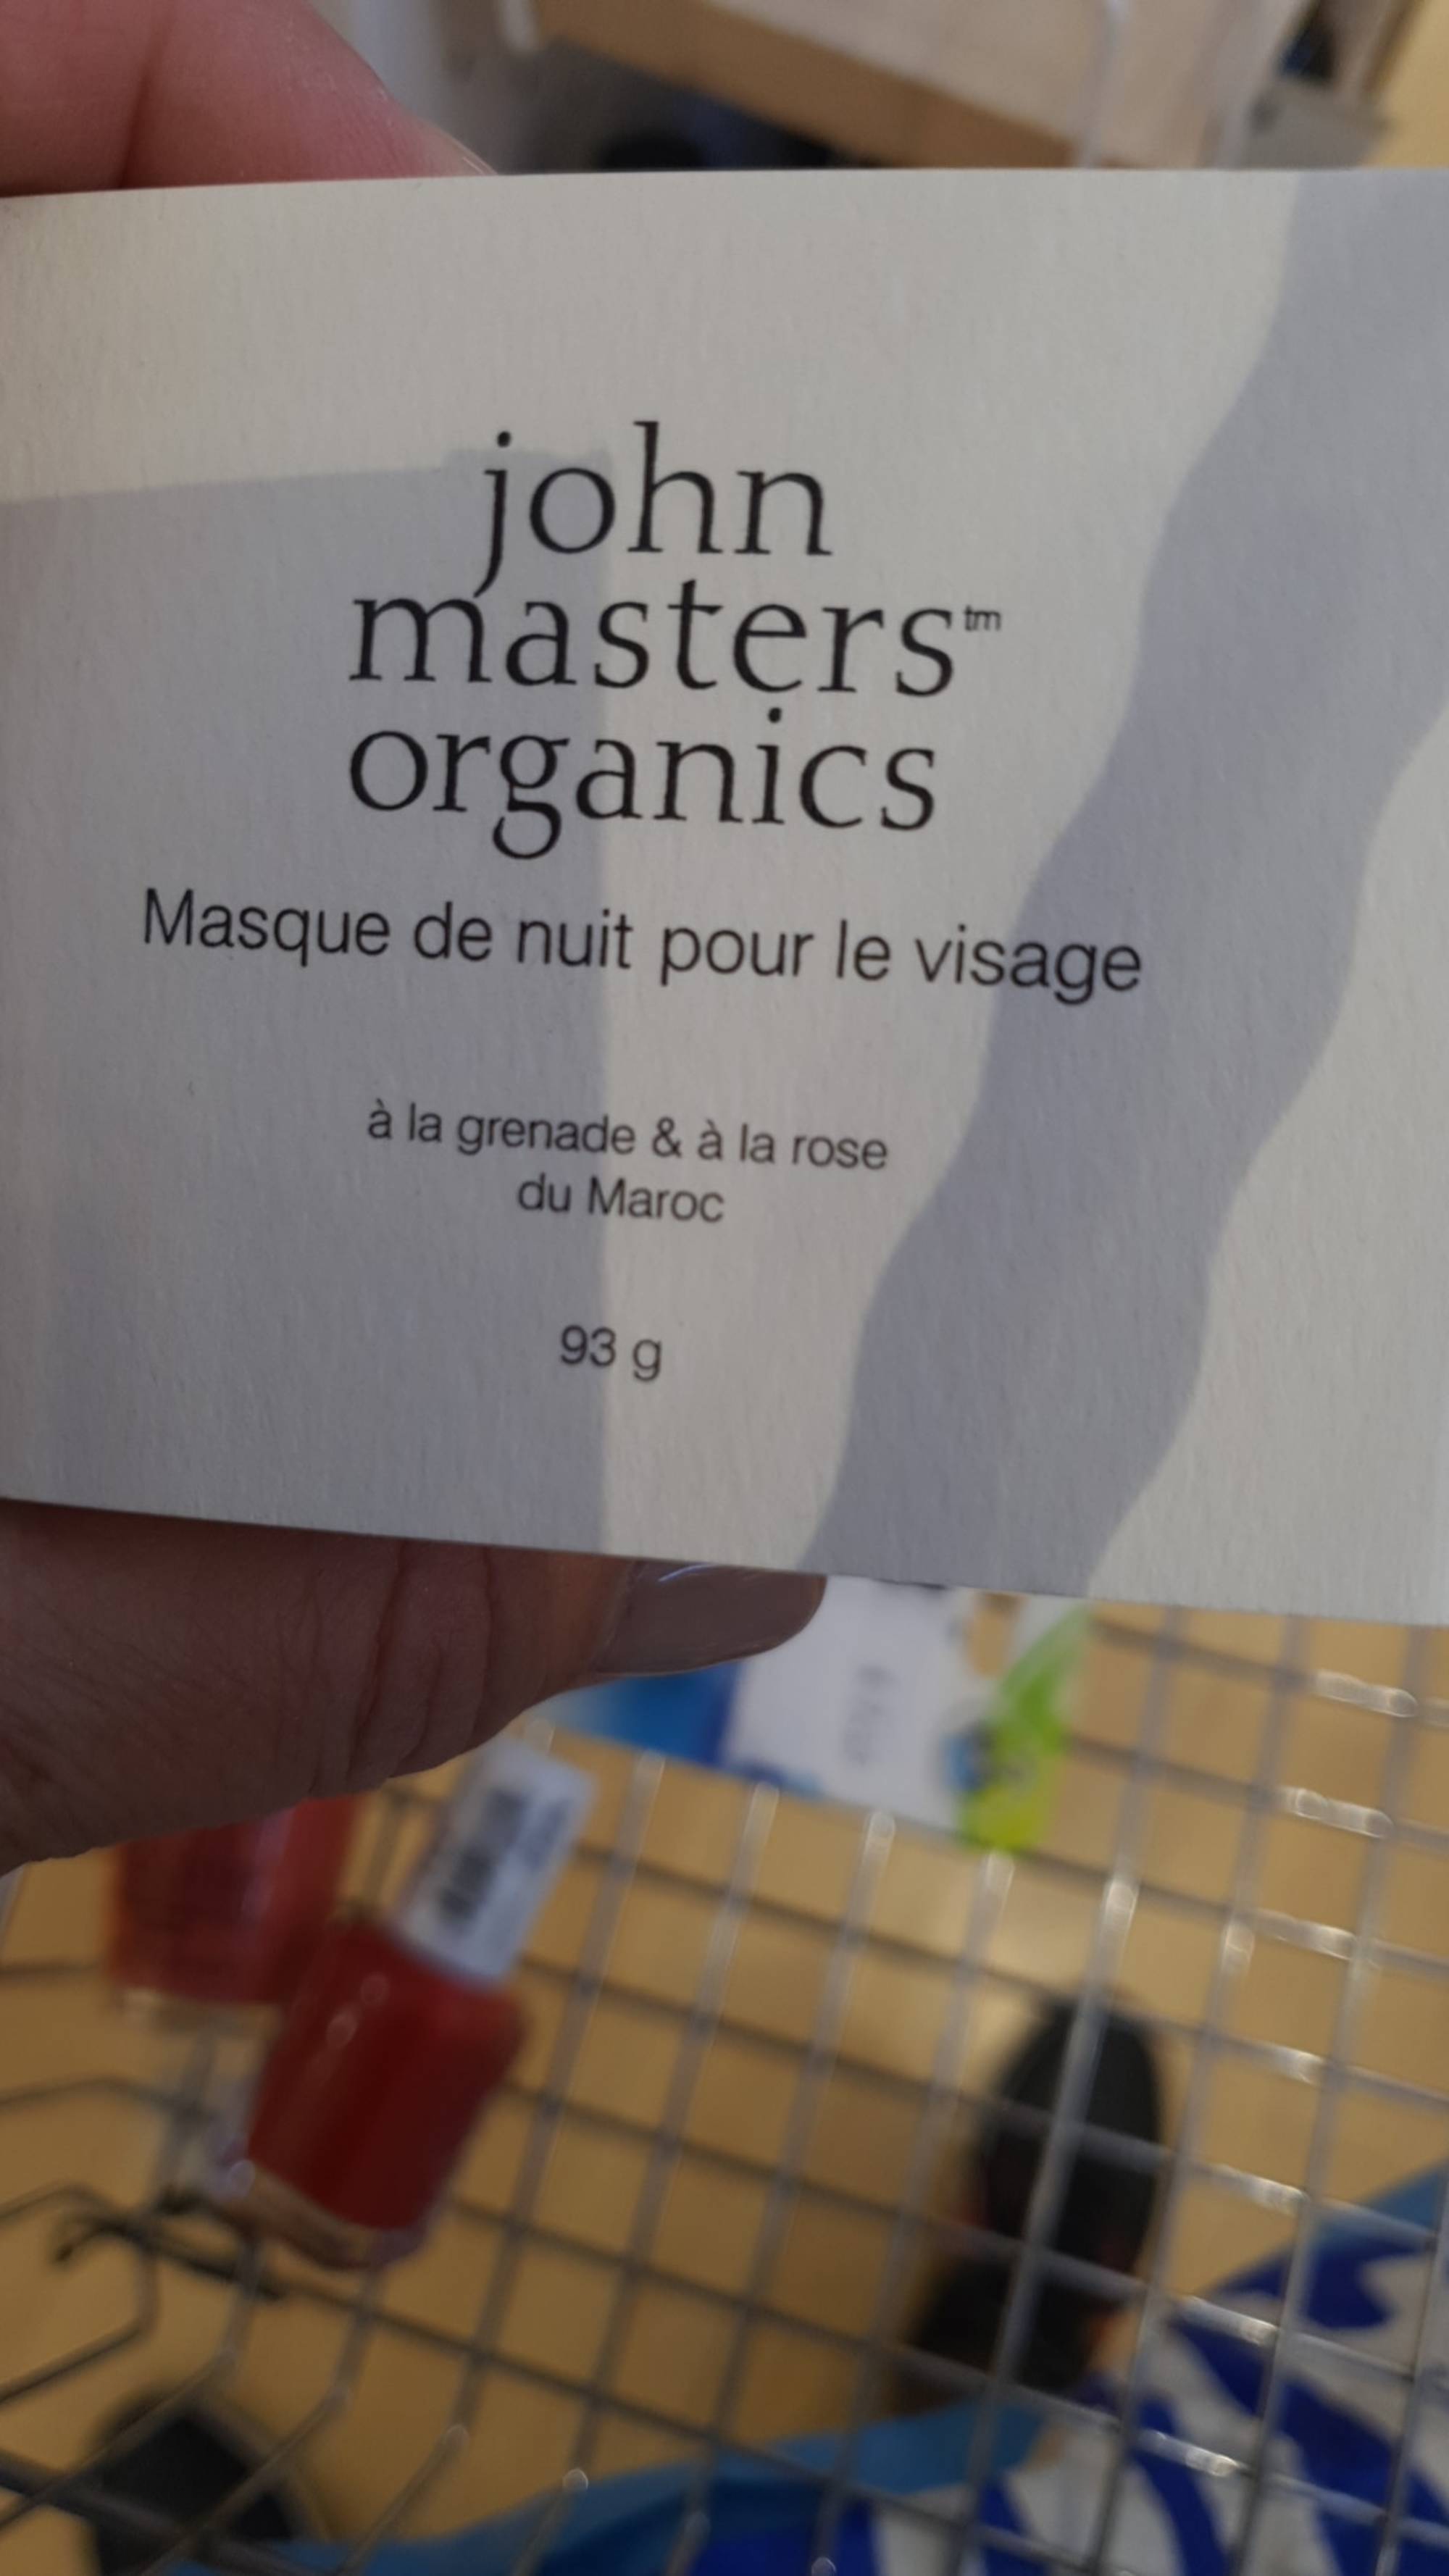 JOHN MASTERS ORGANICS - Masque de nuit pour le visage à la grenade & à la rose du Maroc